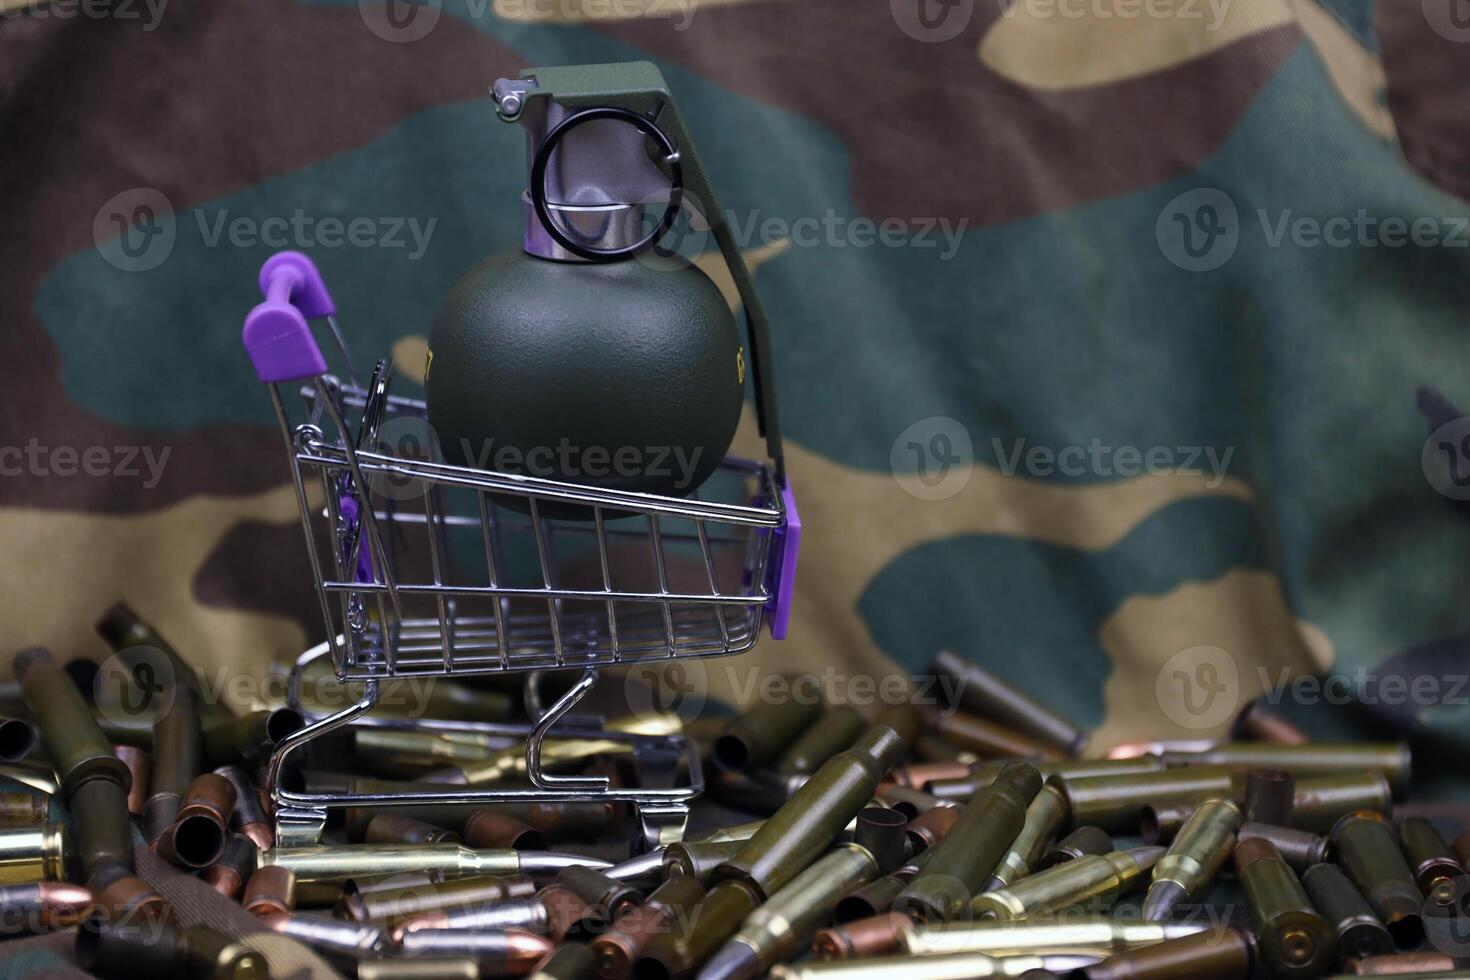 fusil cartouches dans petit achats Chariot. gros calibre munitions cartouches et main grenades avec une petit achats panier photo